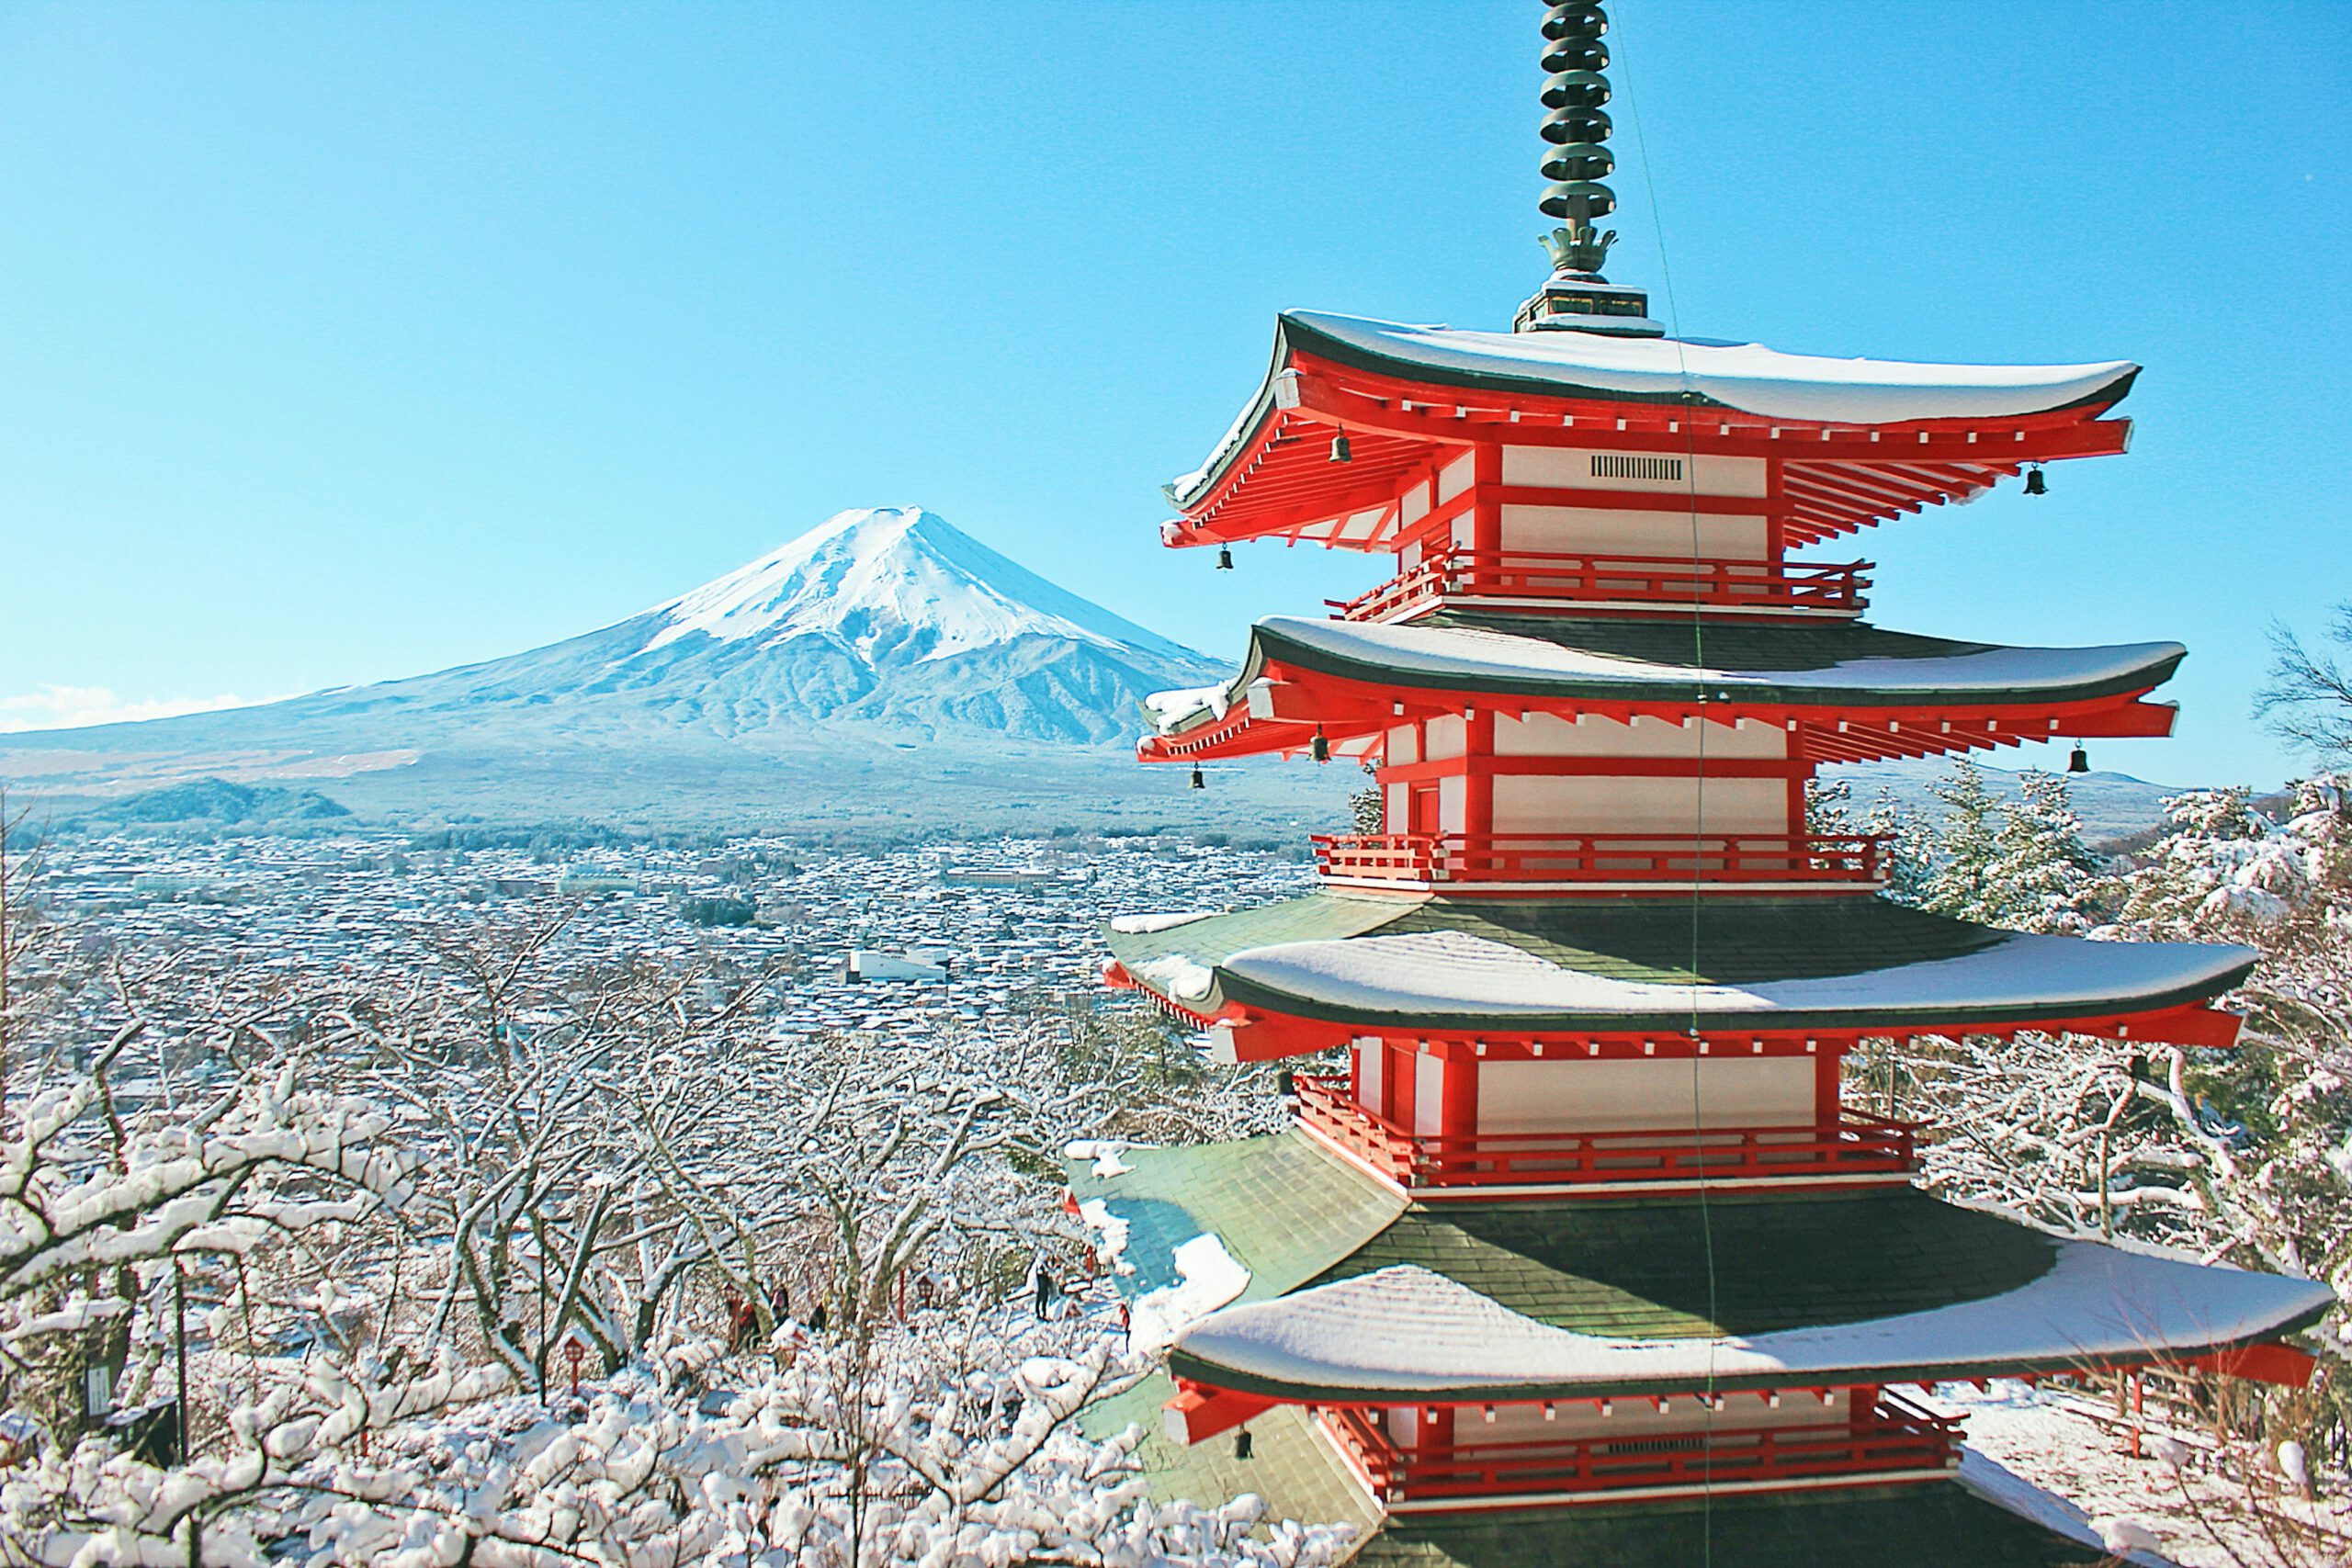 Widoki na górę Fuji potrafią zachwycić. Photo by Weiqi Xiong on Unsplash